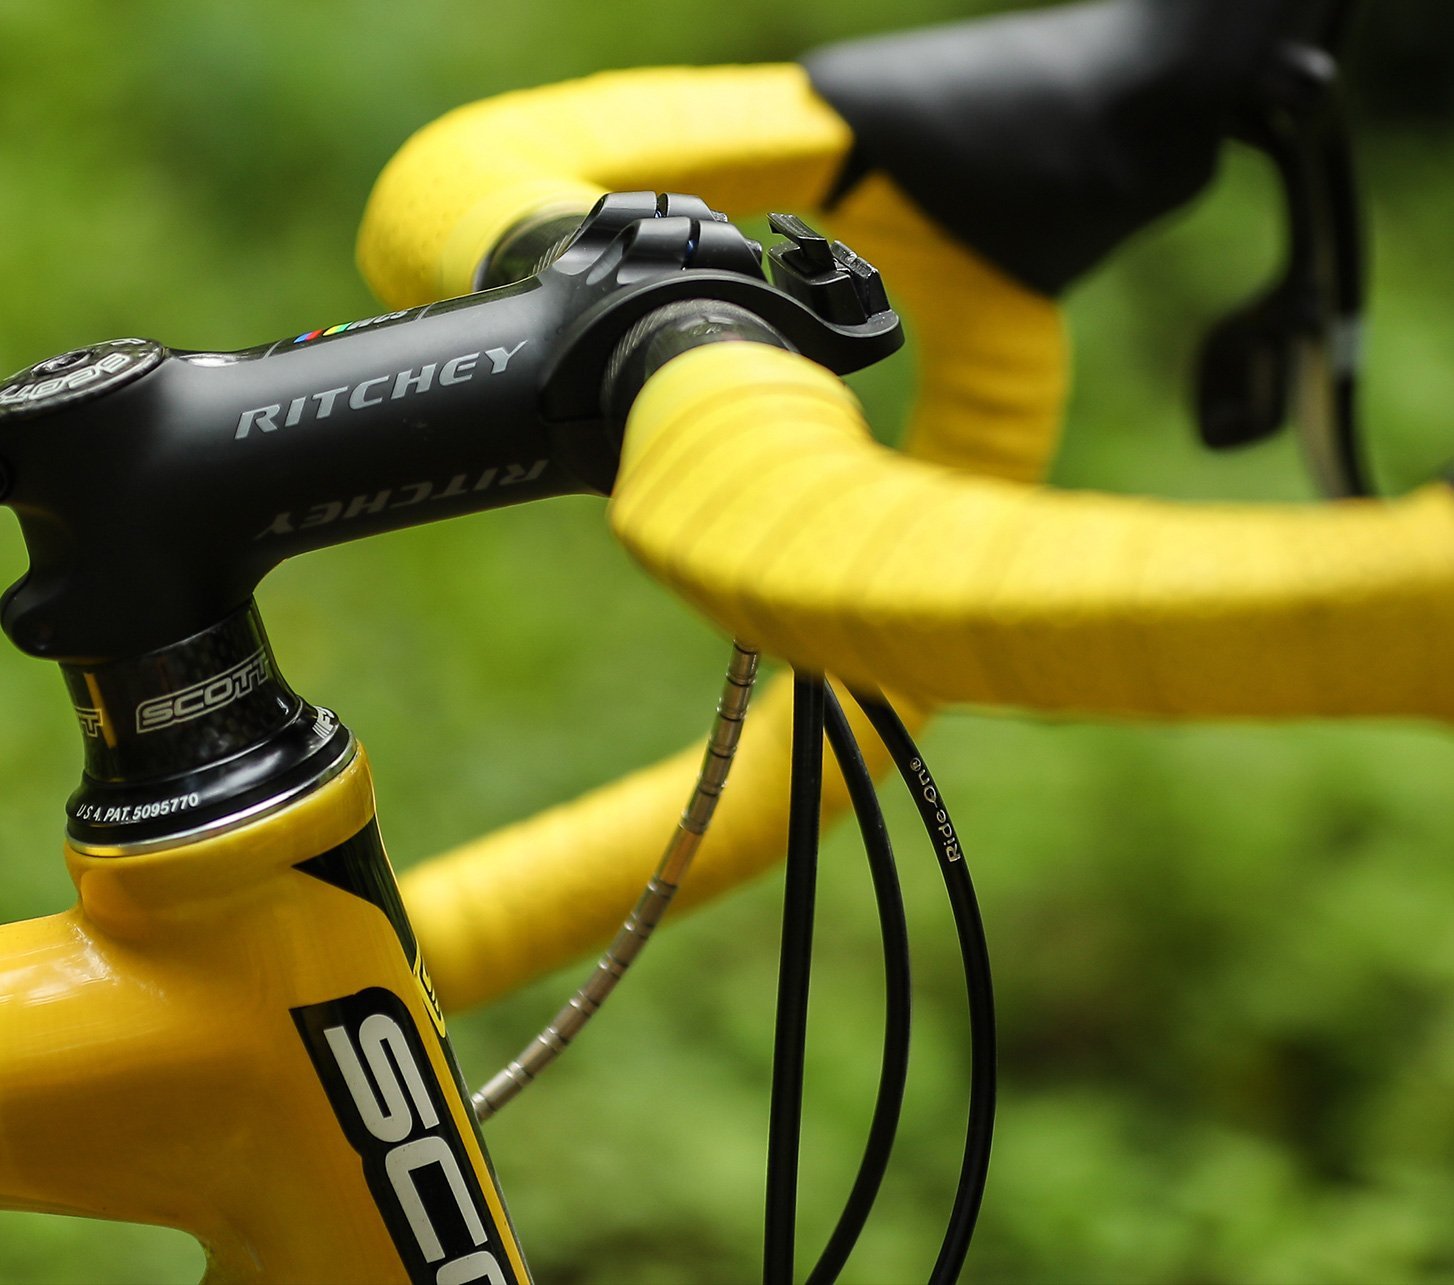 Ritchey Fahrradteile schwarzer Vorbau am Rad montiert mit Rennlenker und leuchtend gelbem Lenkerband